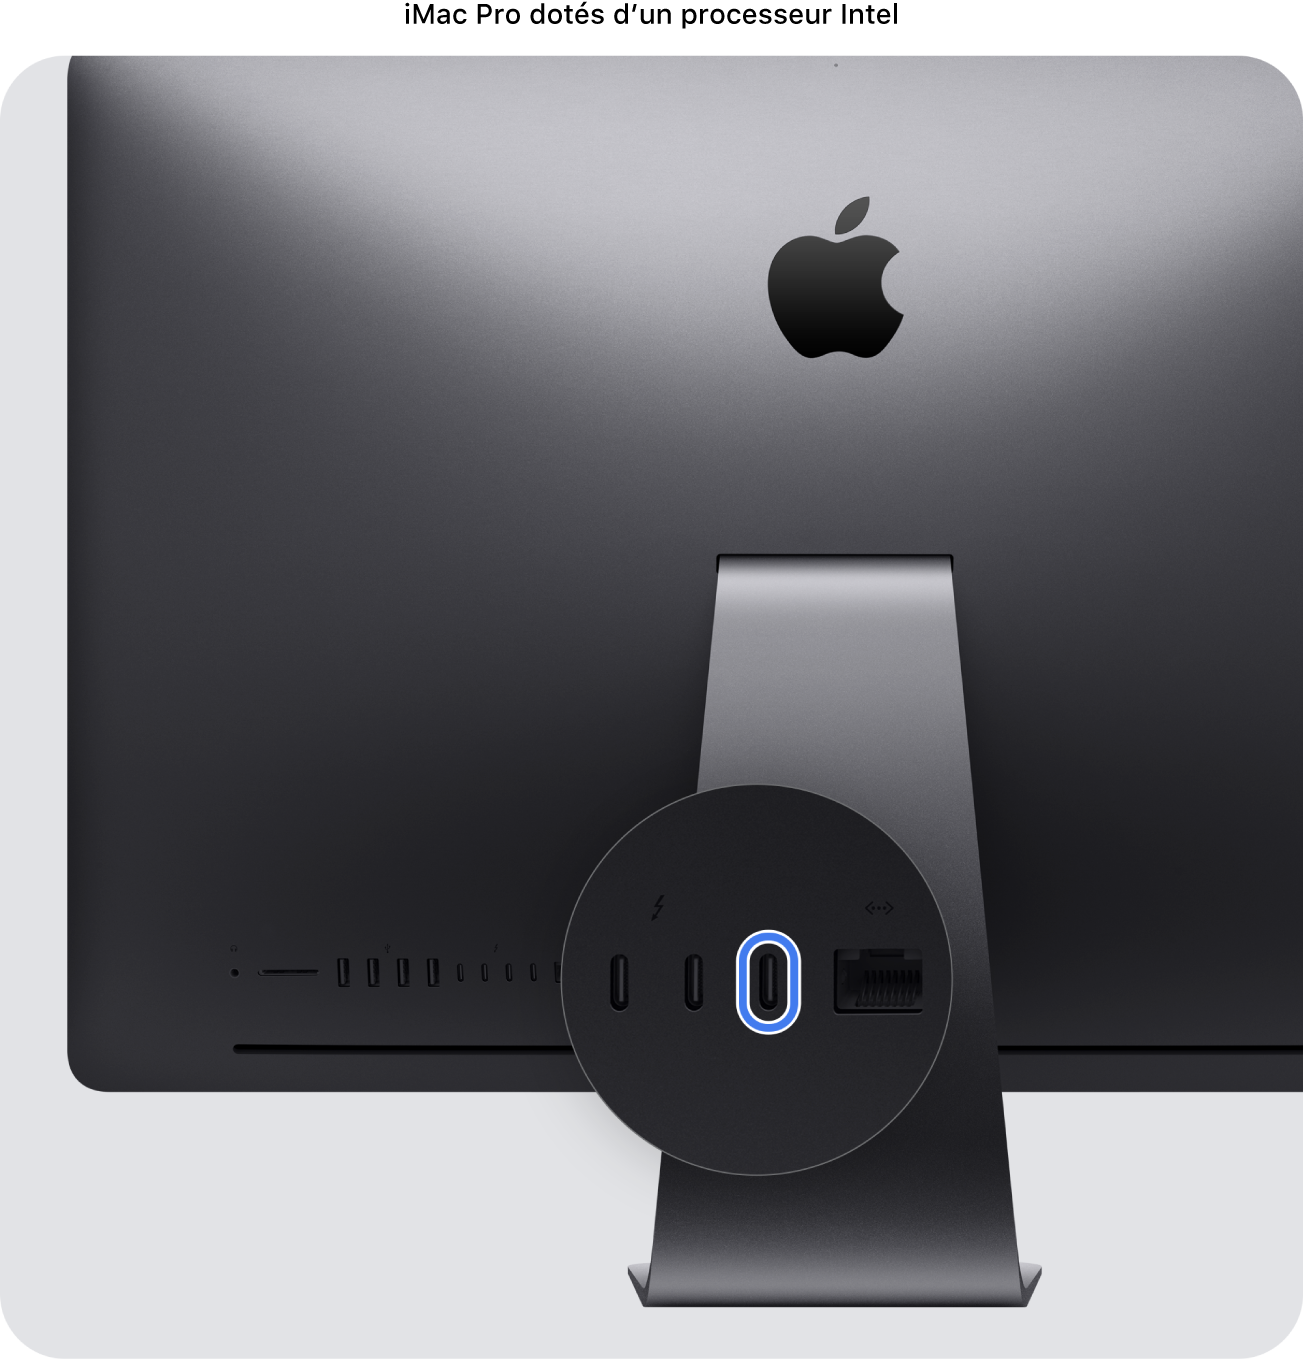 L’arrière d’un iMac Pro (2017), présentant quatre ports Thunderbolt 3 (USB-C), avec celui situé le plus à droite mis en évidence.